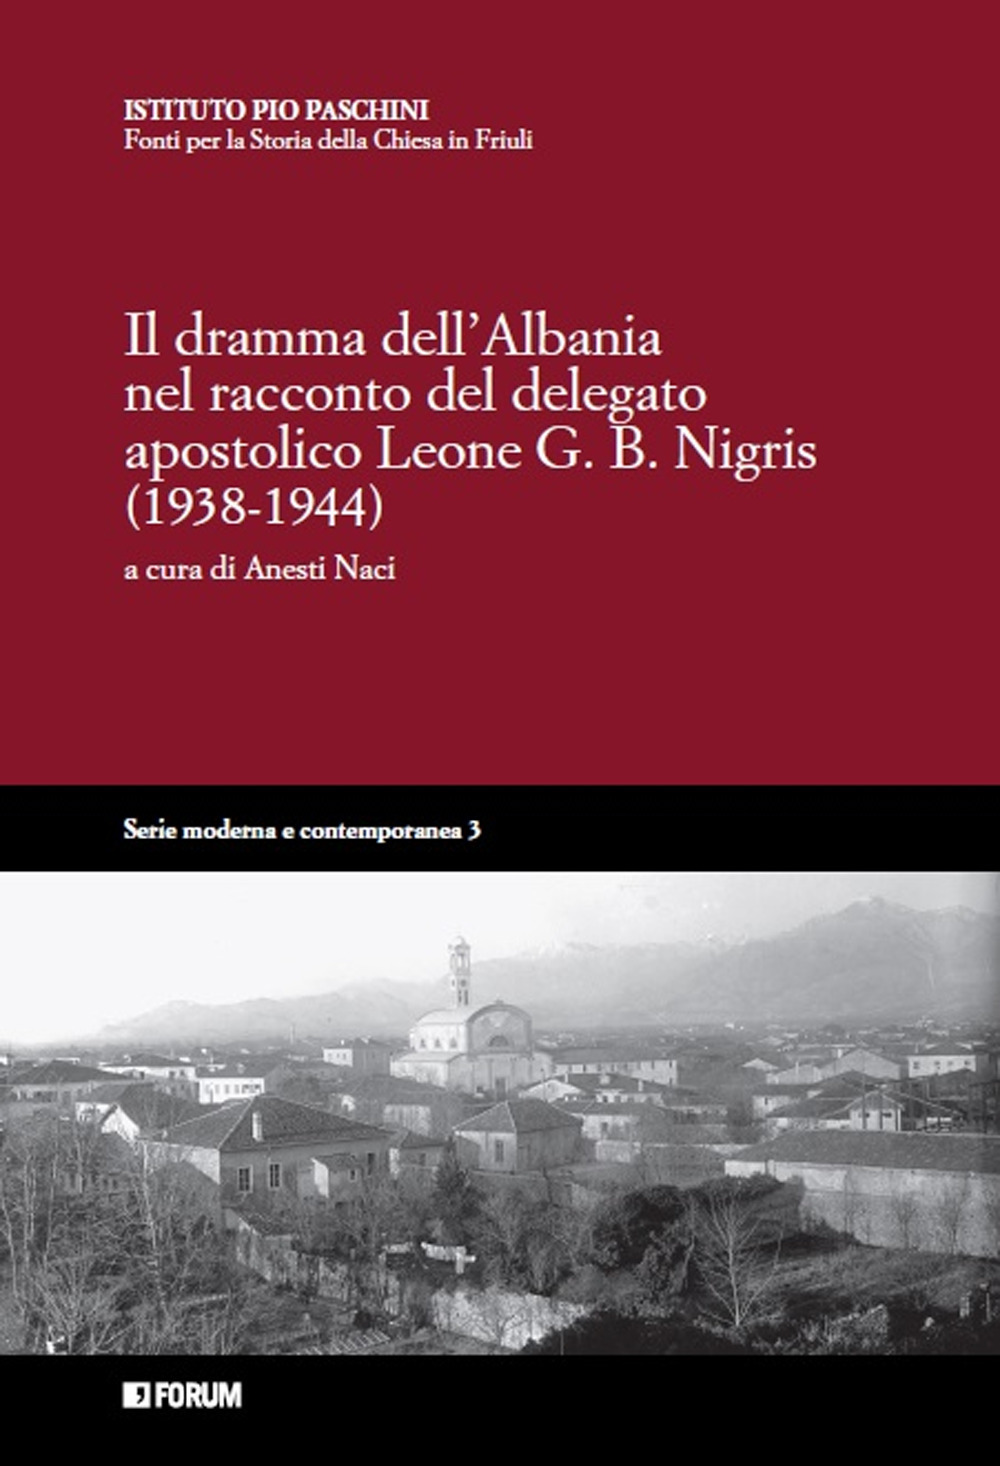 Il dramma dell'Albania nel racconto del delegato apostolico Leone G.B. Nigris (1938-1944)